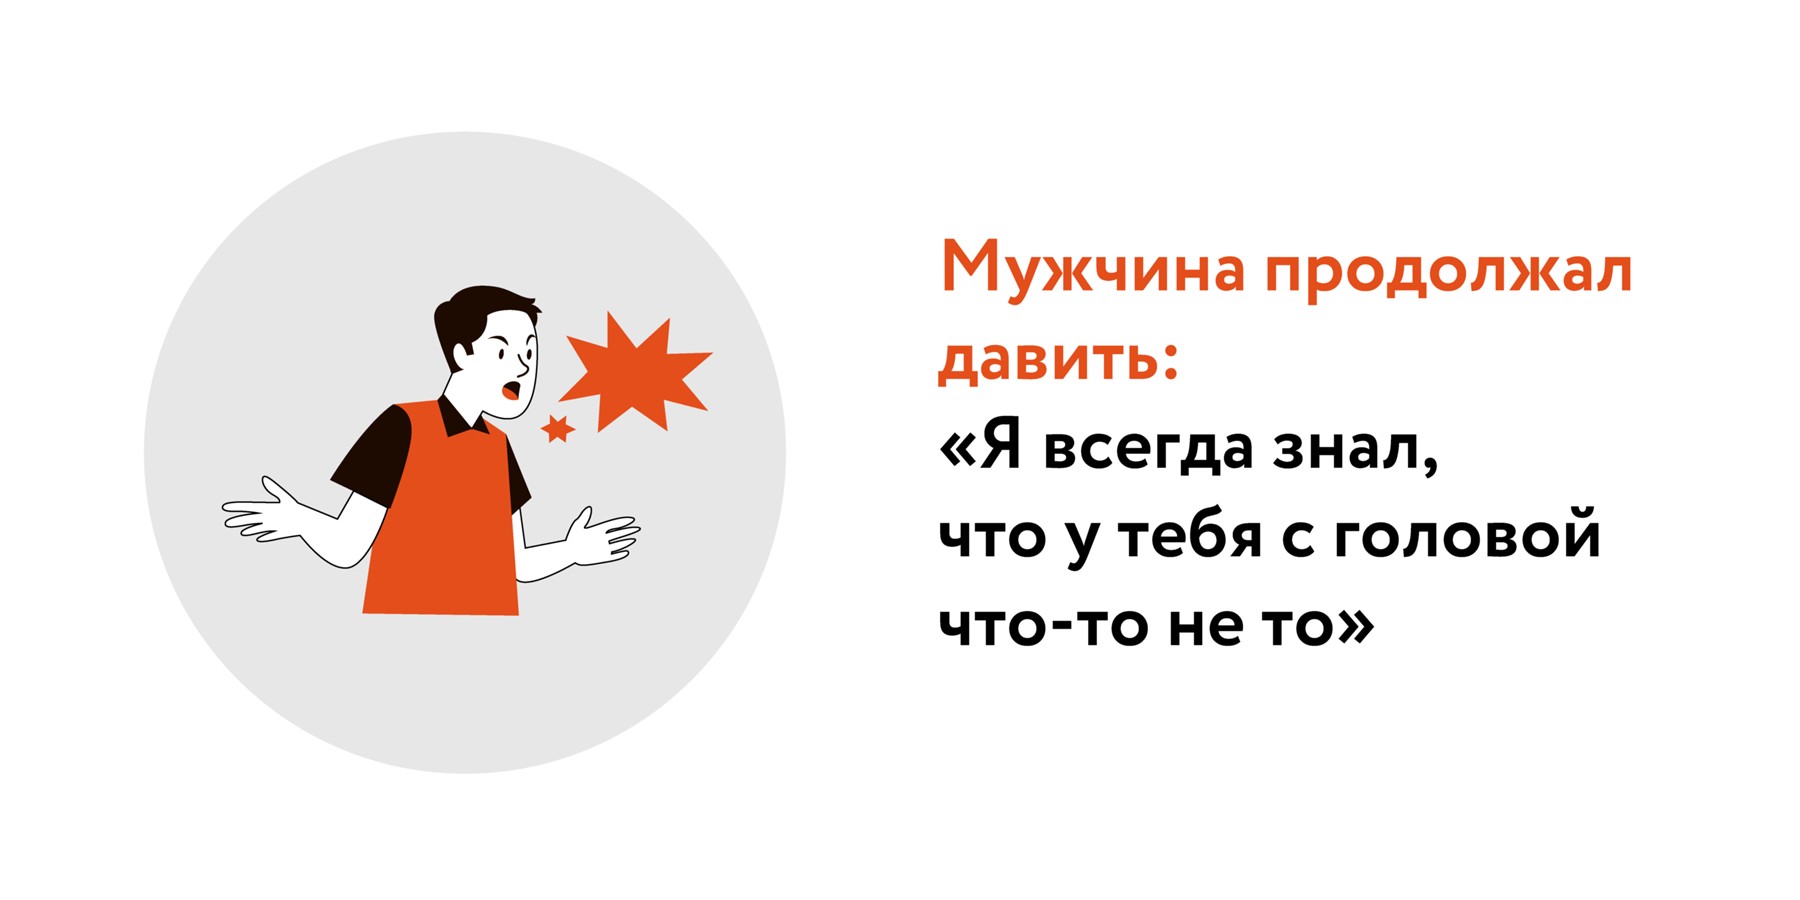 «Обида — это агрессивная реакция» - taimyr-expo.ru